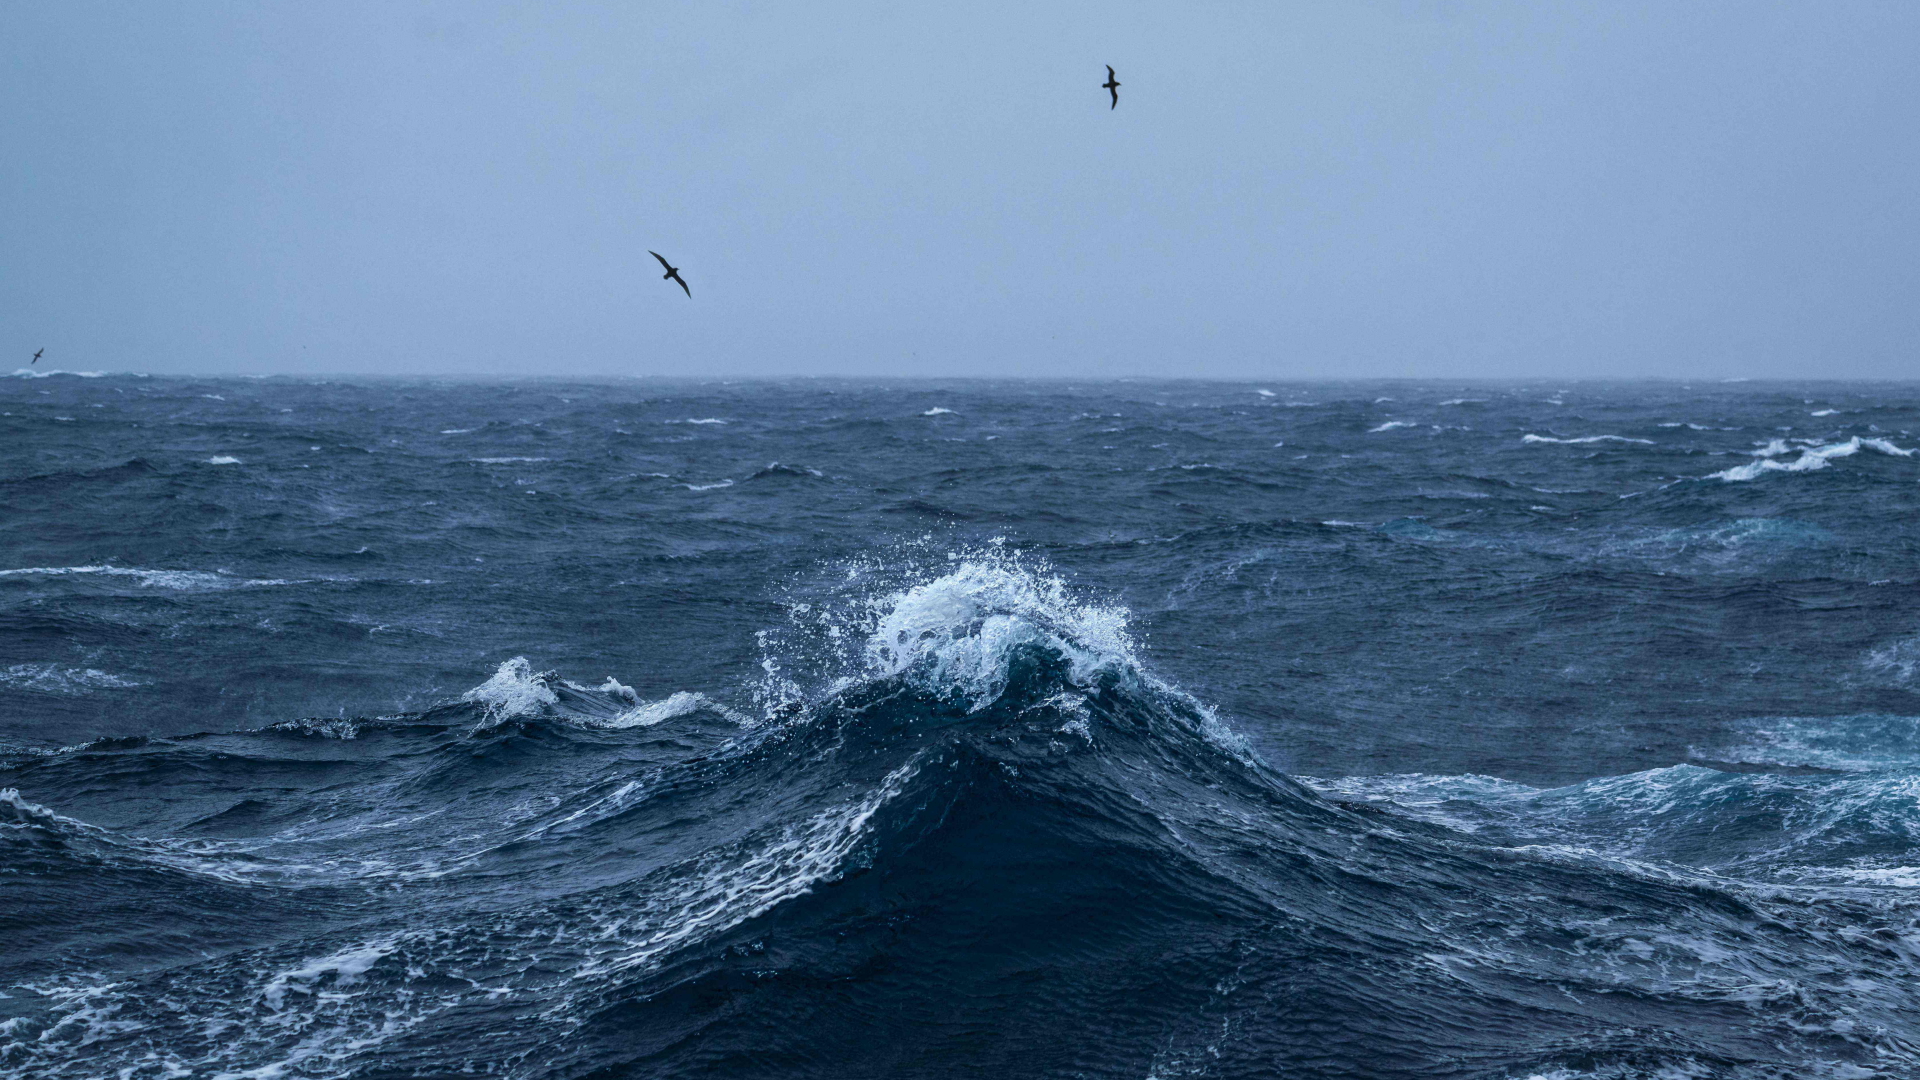 Albatrosse fliegen über die Wellen auf hoher See | AFP